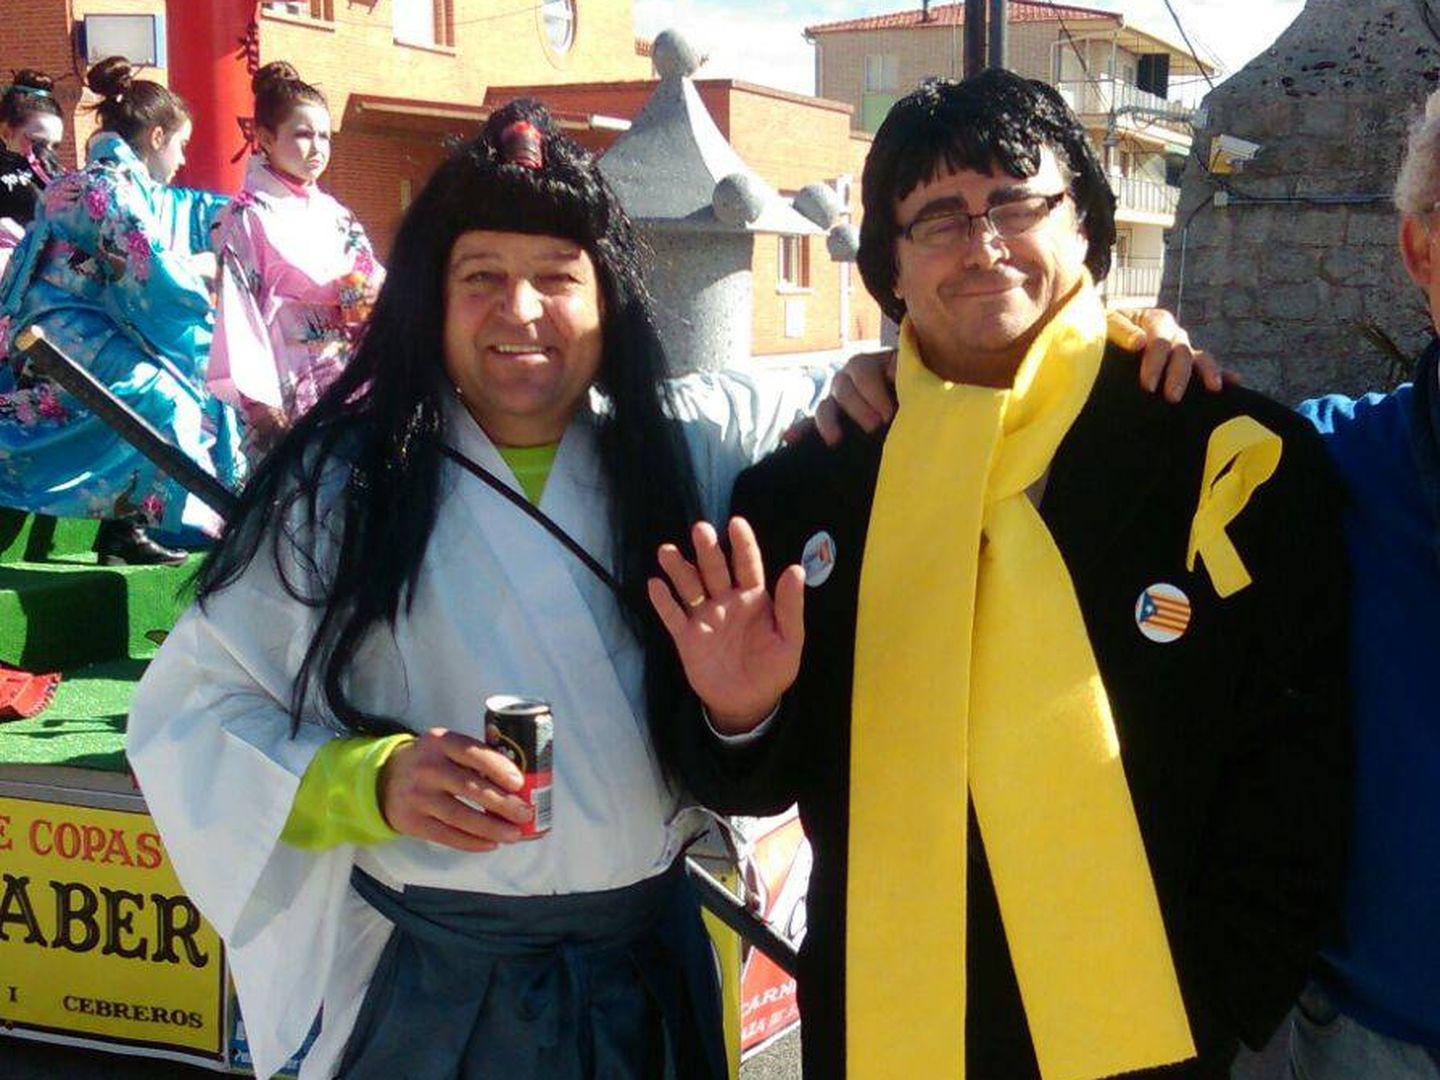 Puigdemont ha sido el disfraz estrella del carnaval. En la imagen, desfile de carrozas en Cebreros (Ávila).